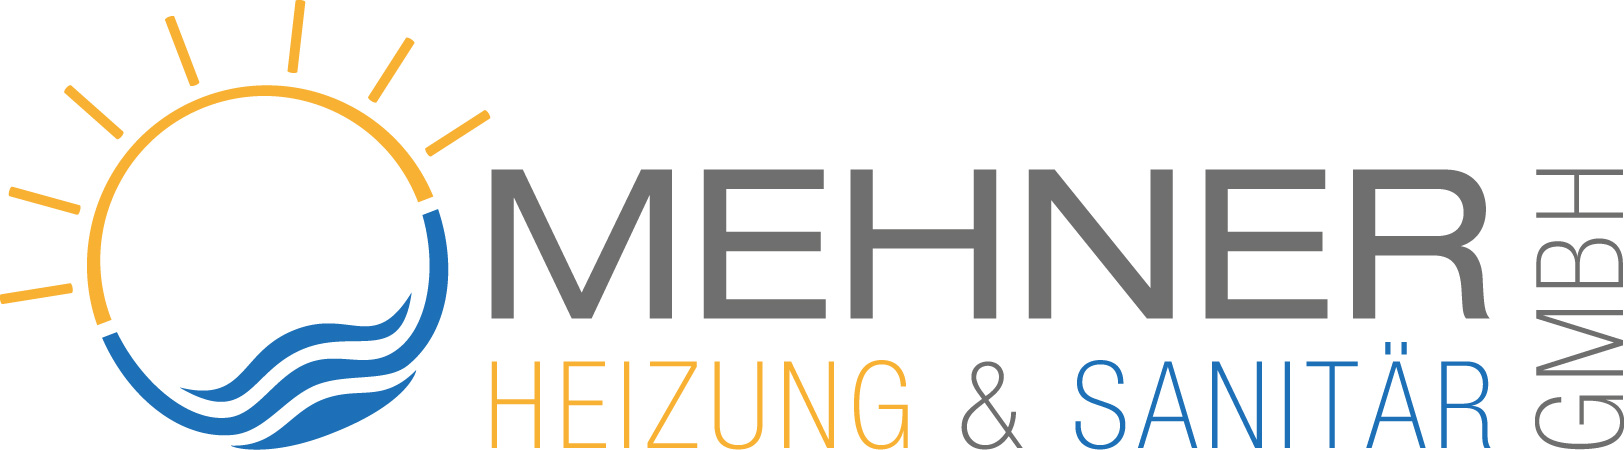 Bild 1 Mehner Heizung & Sanitär GmbH FAX in Lahr/Schwarzwald